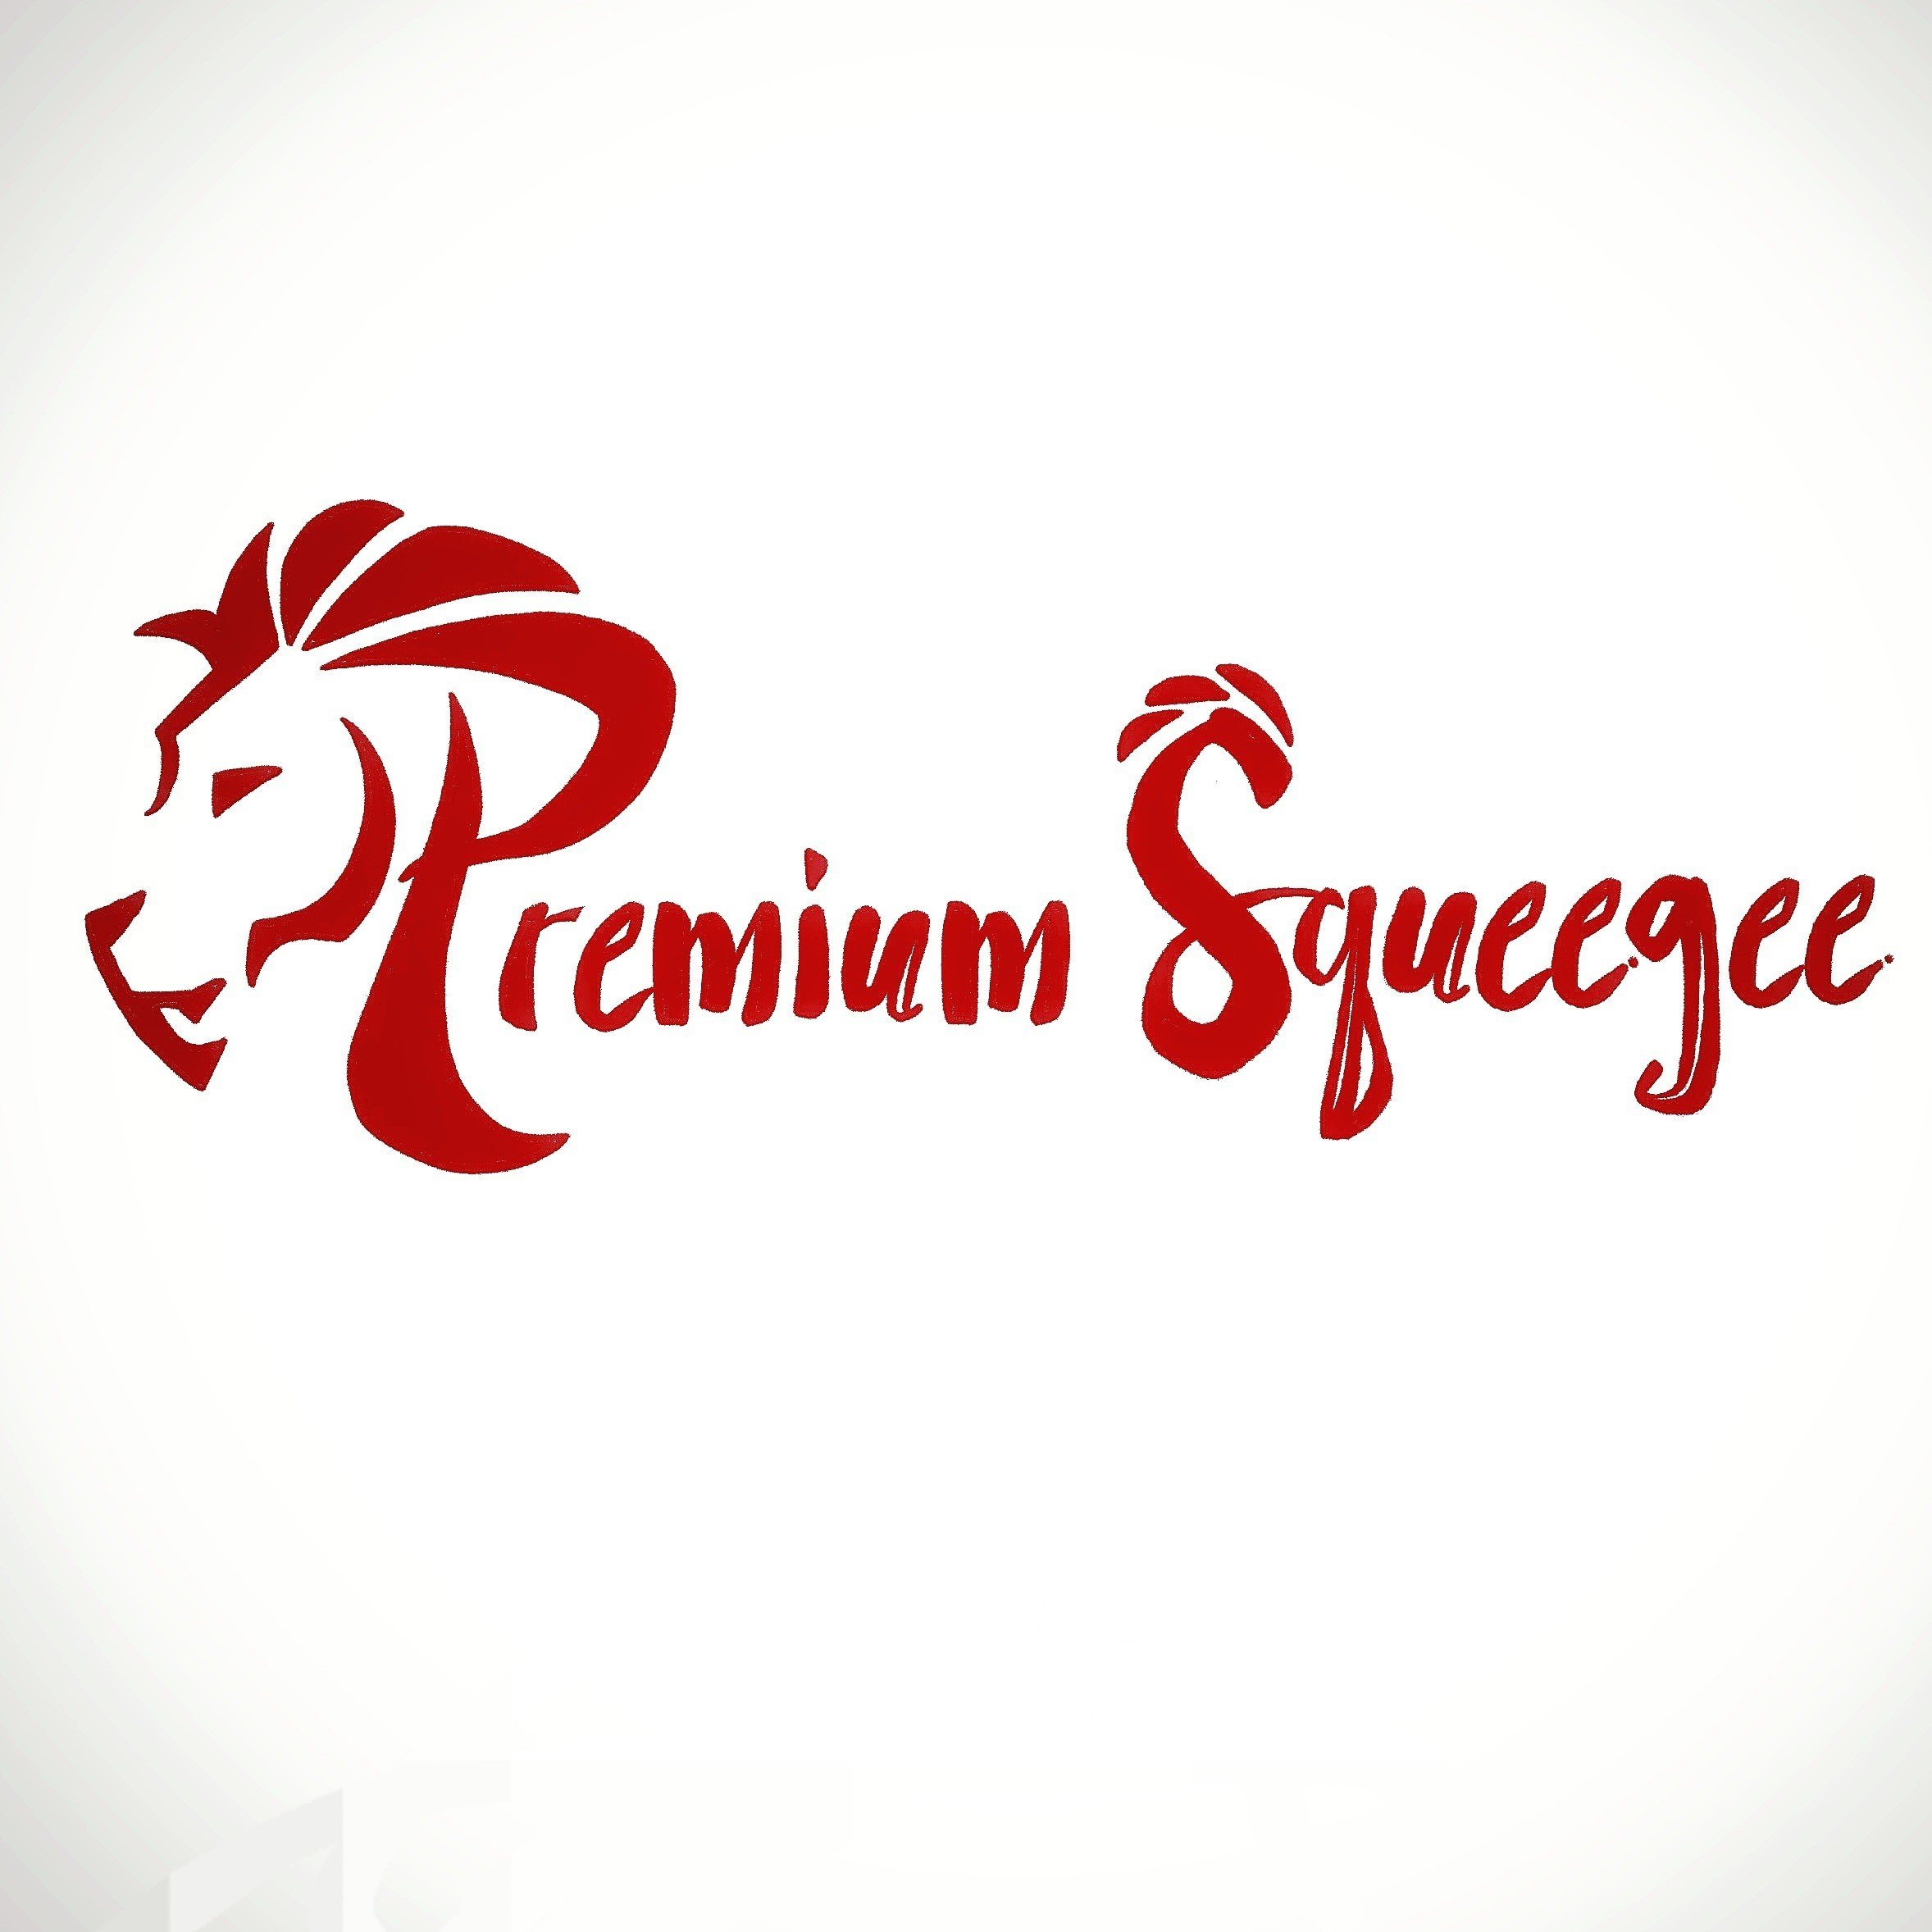 Premium Squeegee Logo